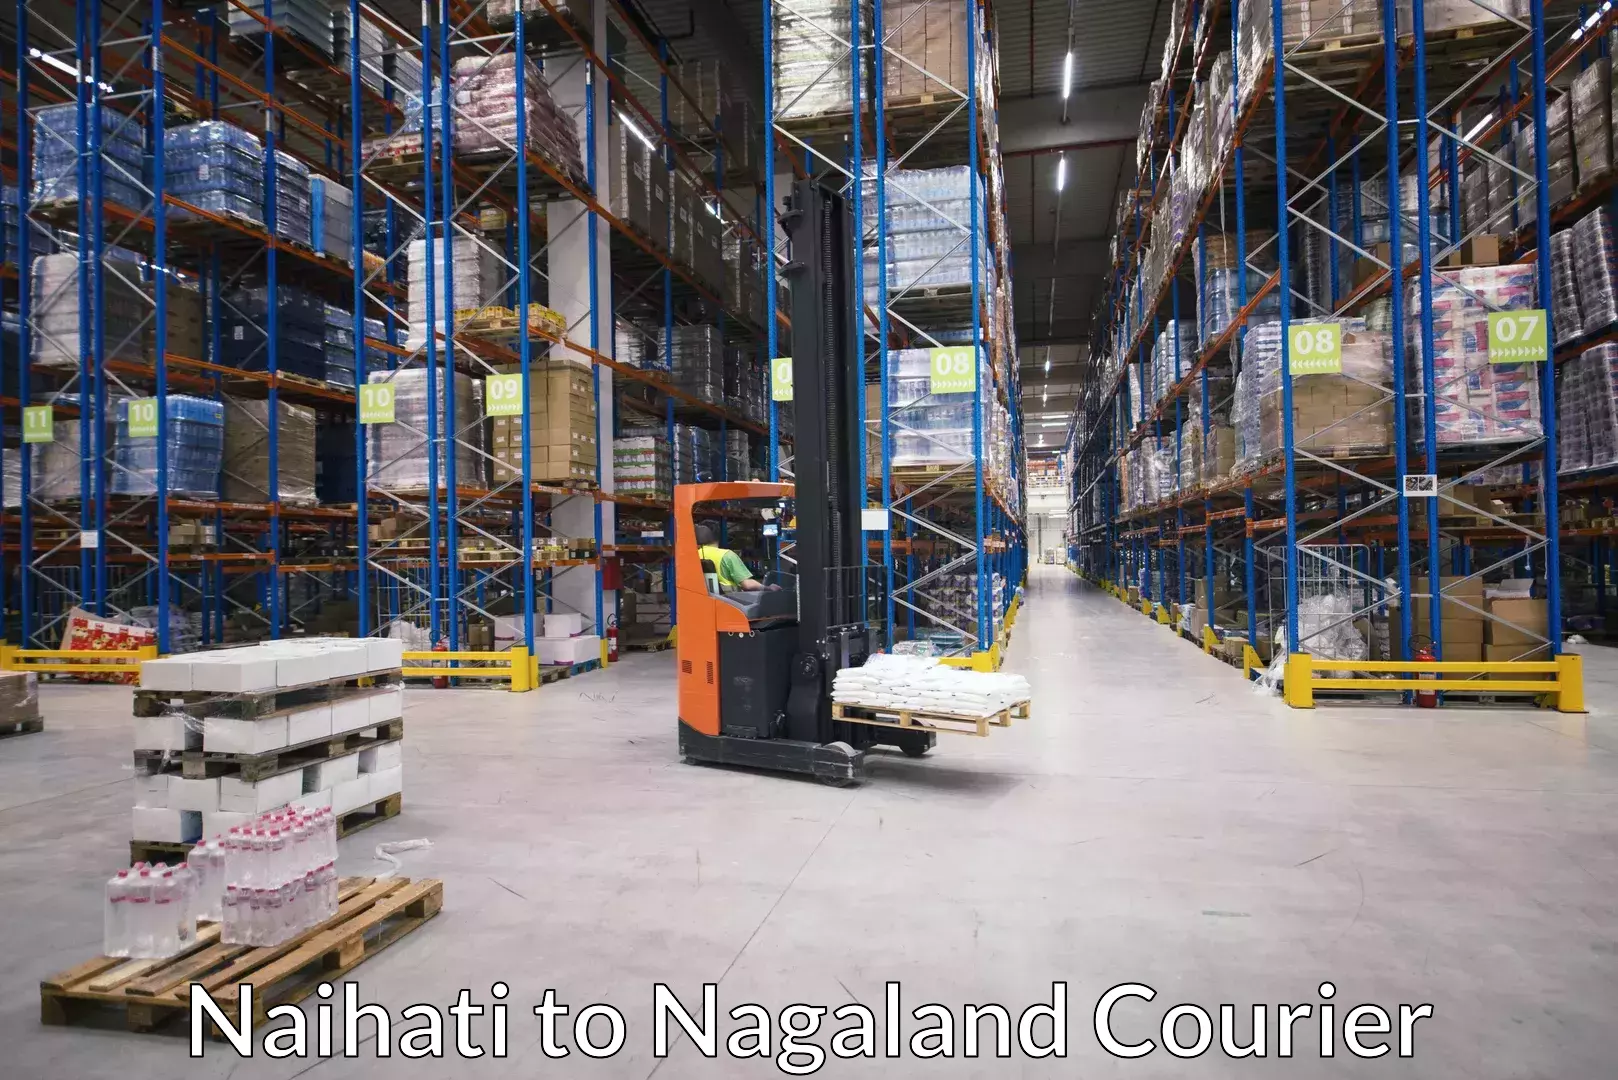 Luggage shipment processing in Naihati to Dimapur